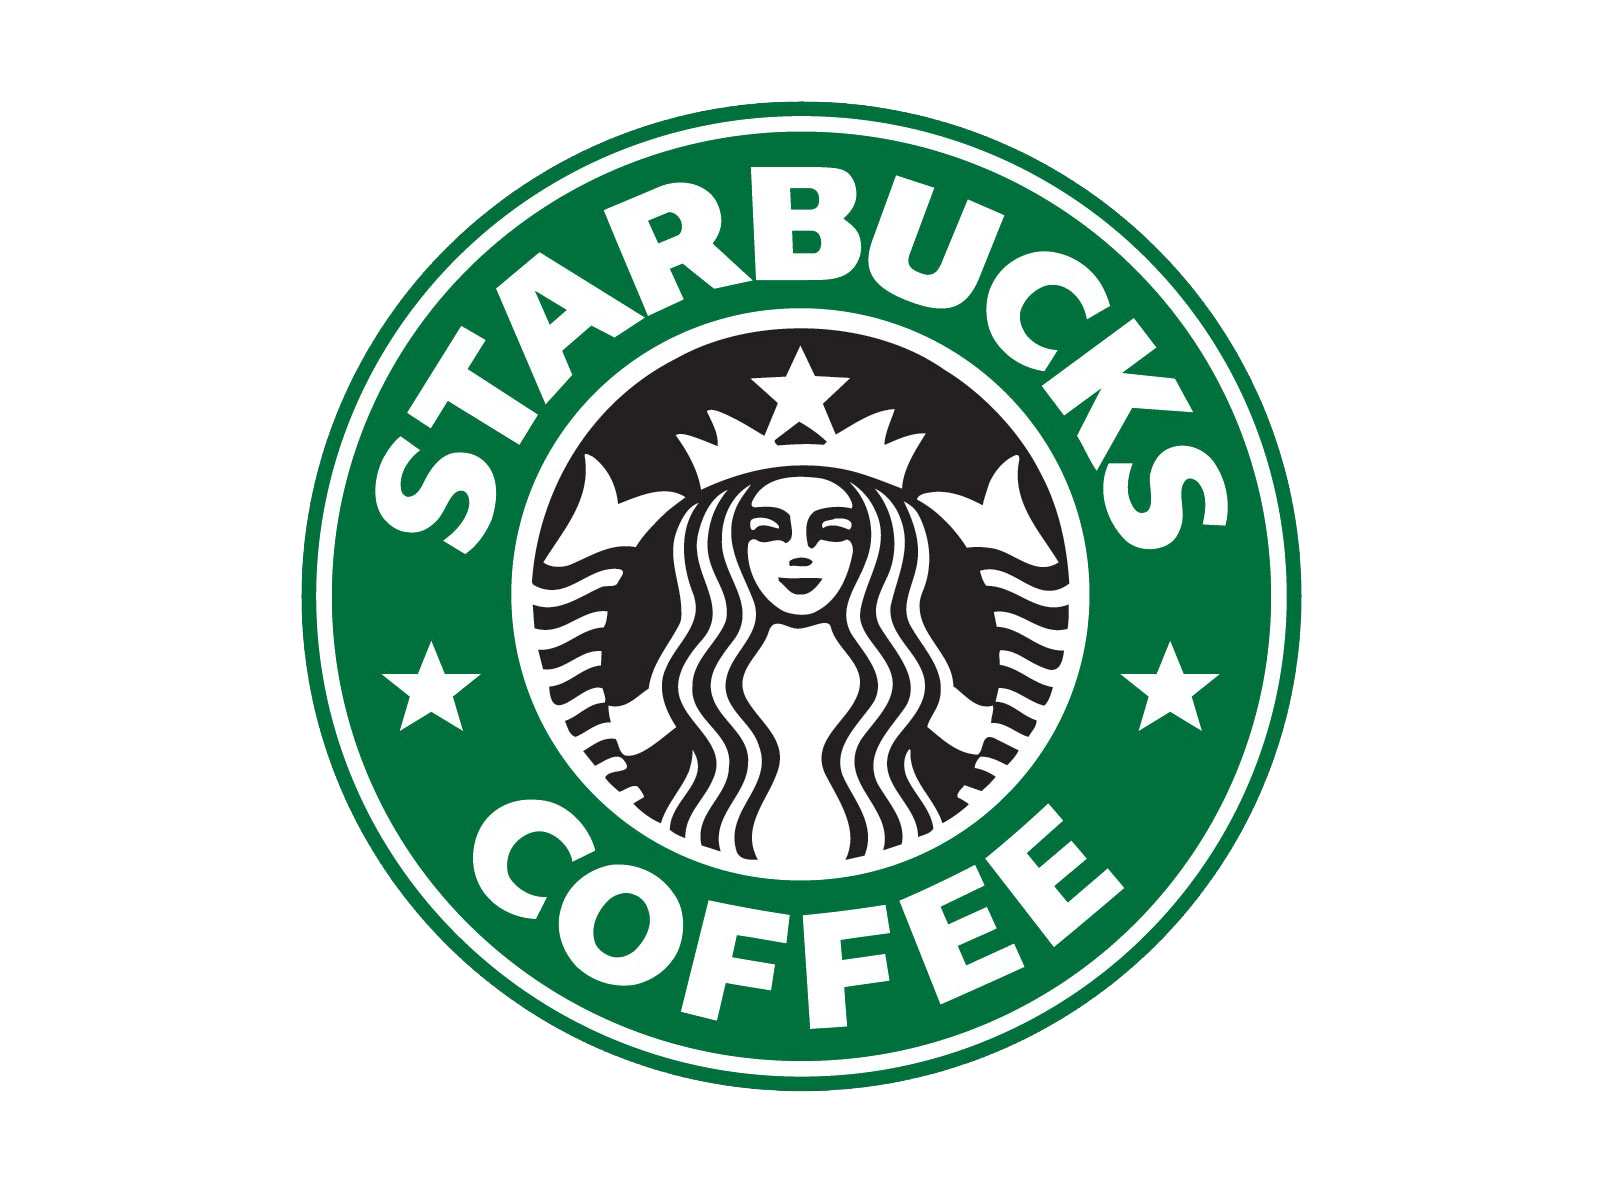 Old Starbucks Logo - Starbucks-logo-old - Mystery Room